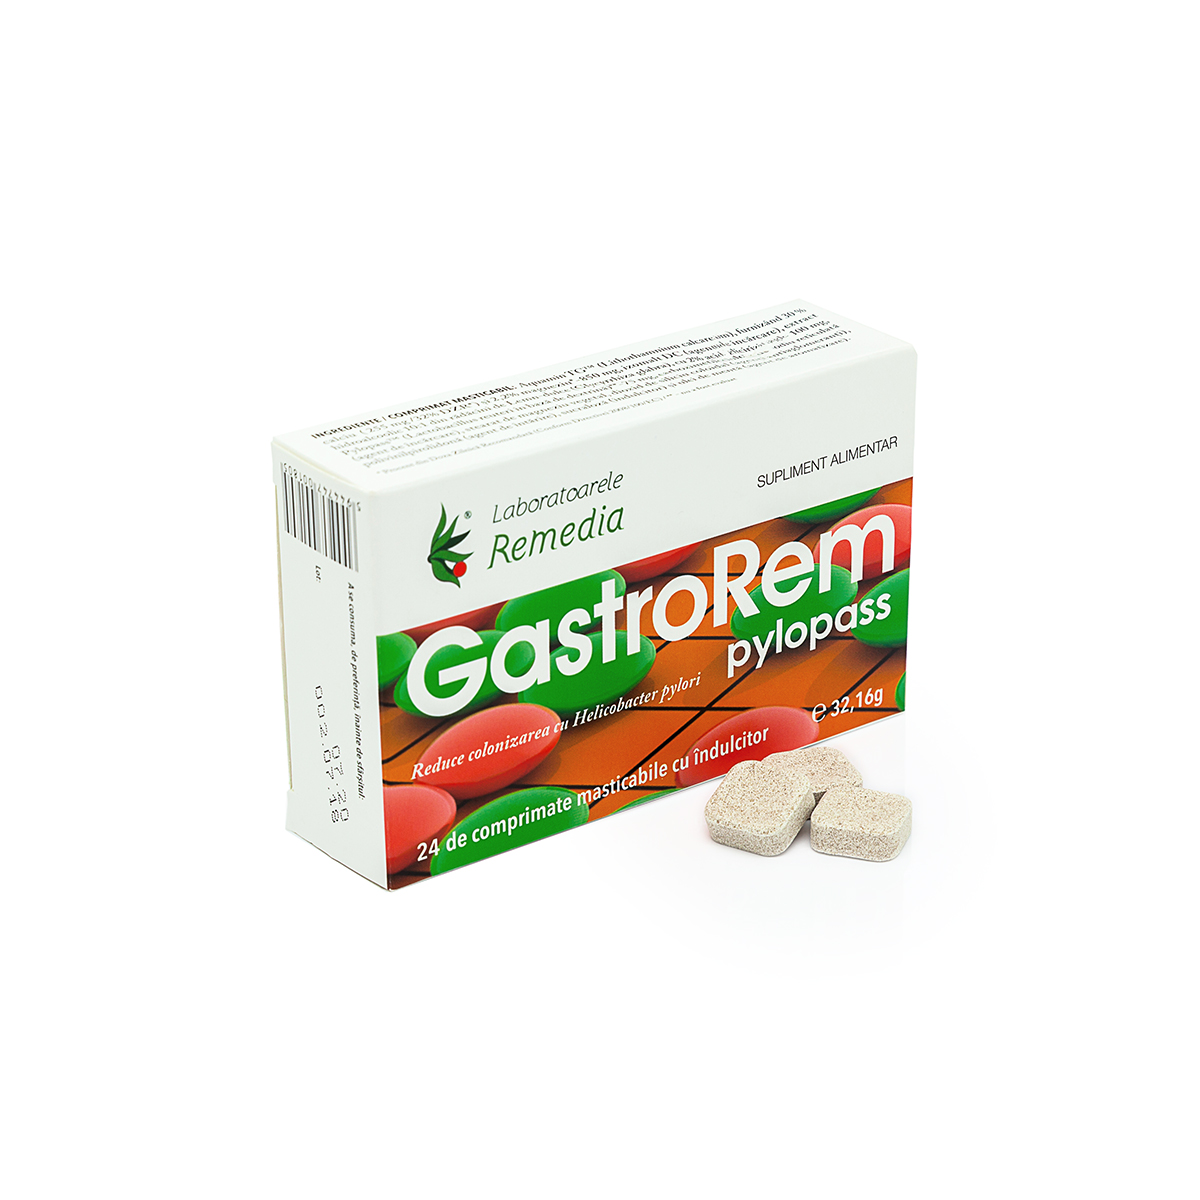 Gastrorem Pylopass, 24 comprimate mestecabile cu indulcitor, Remedia